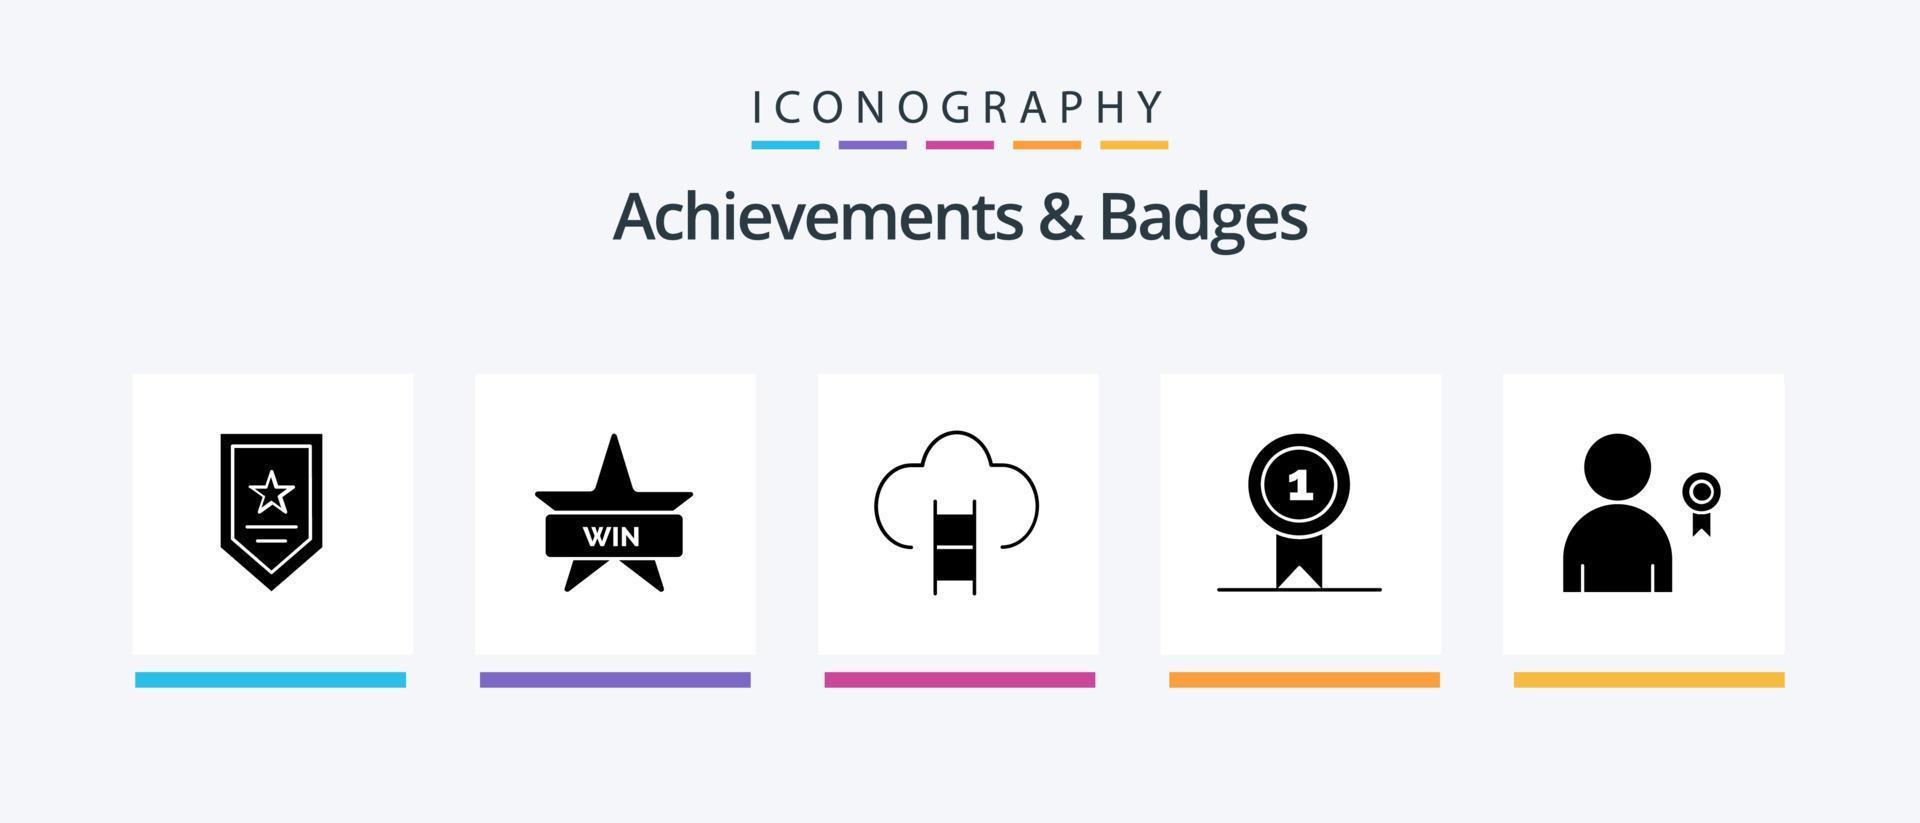 logros e insignias paquete de iconos de glifo 5 que incluye lo mejor. ganar. carrera. premios premio. diseño de iconos creativos vector